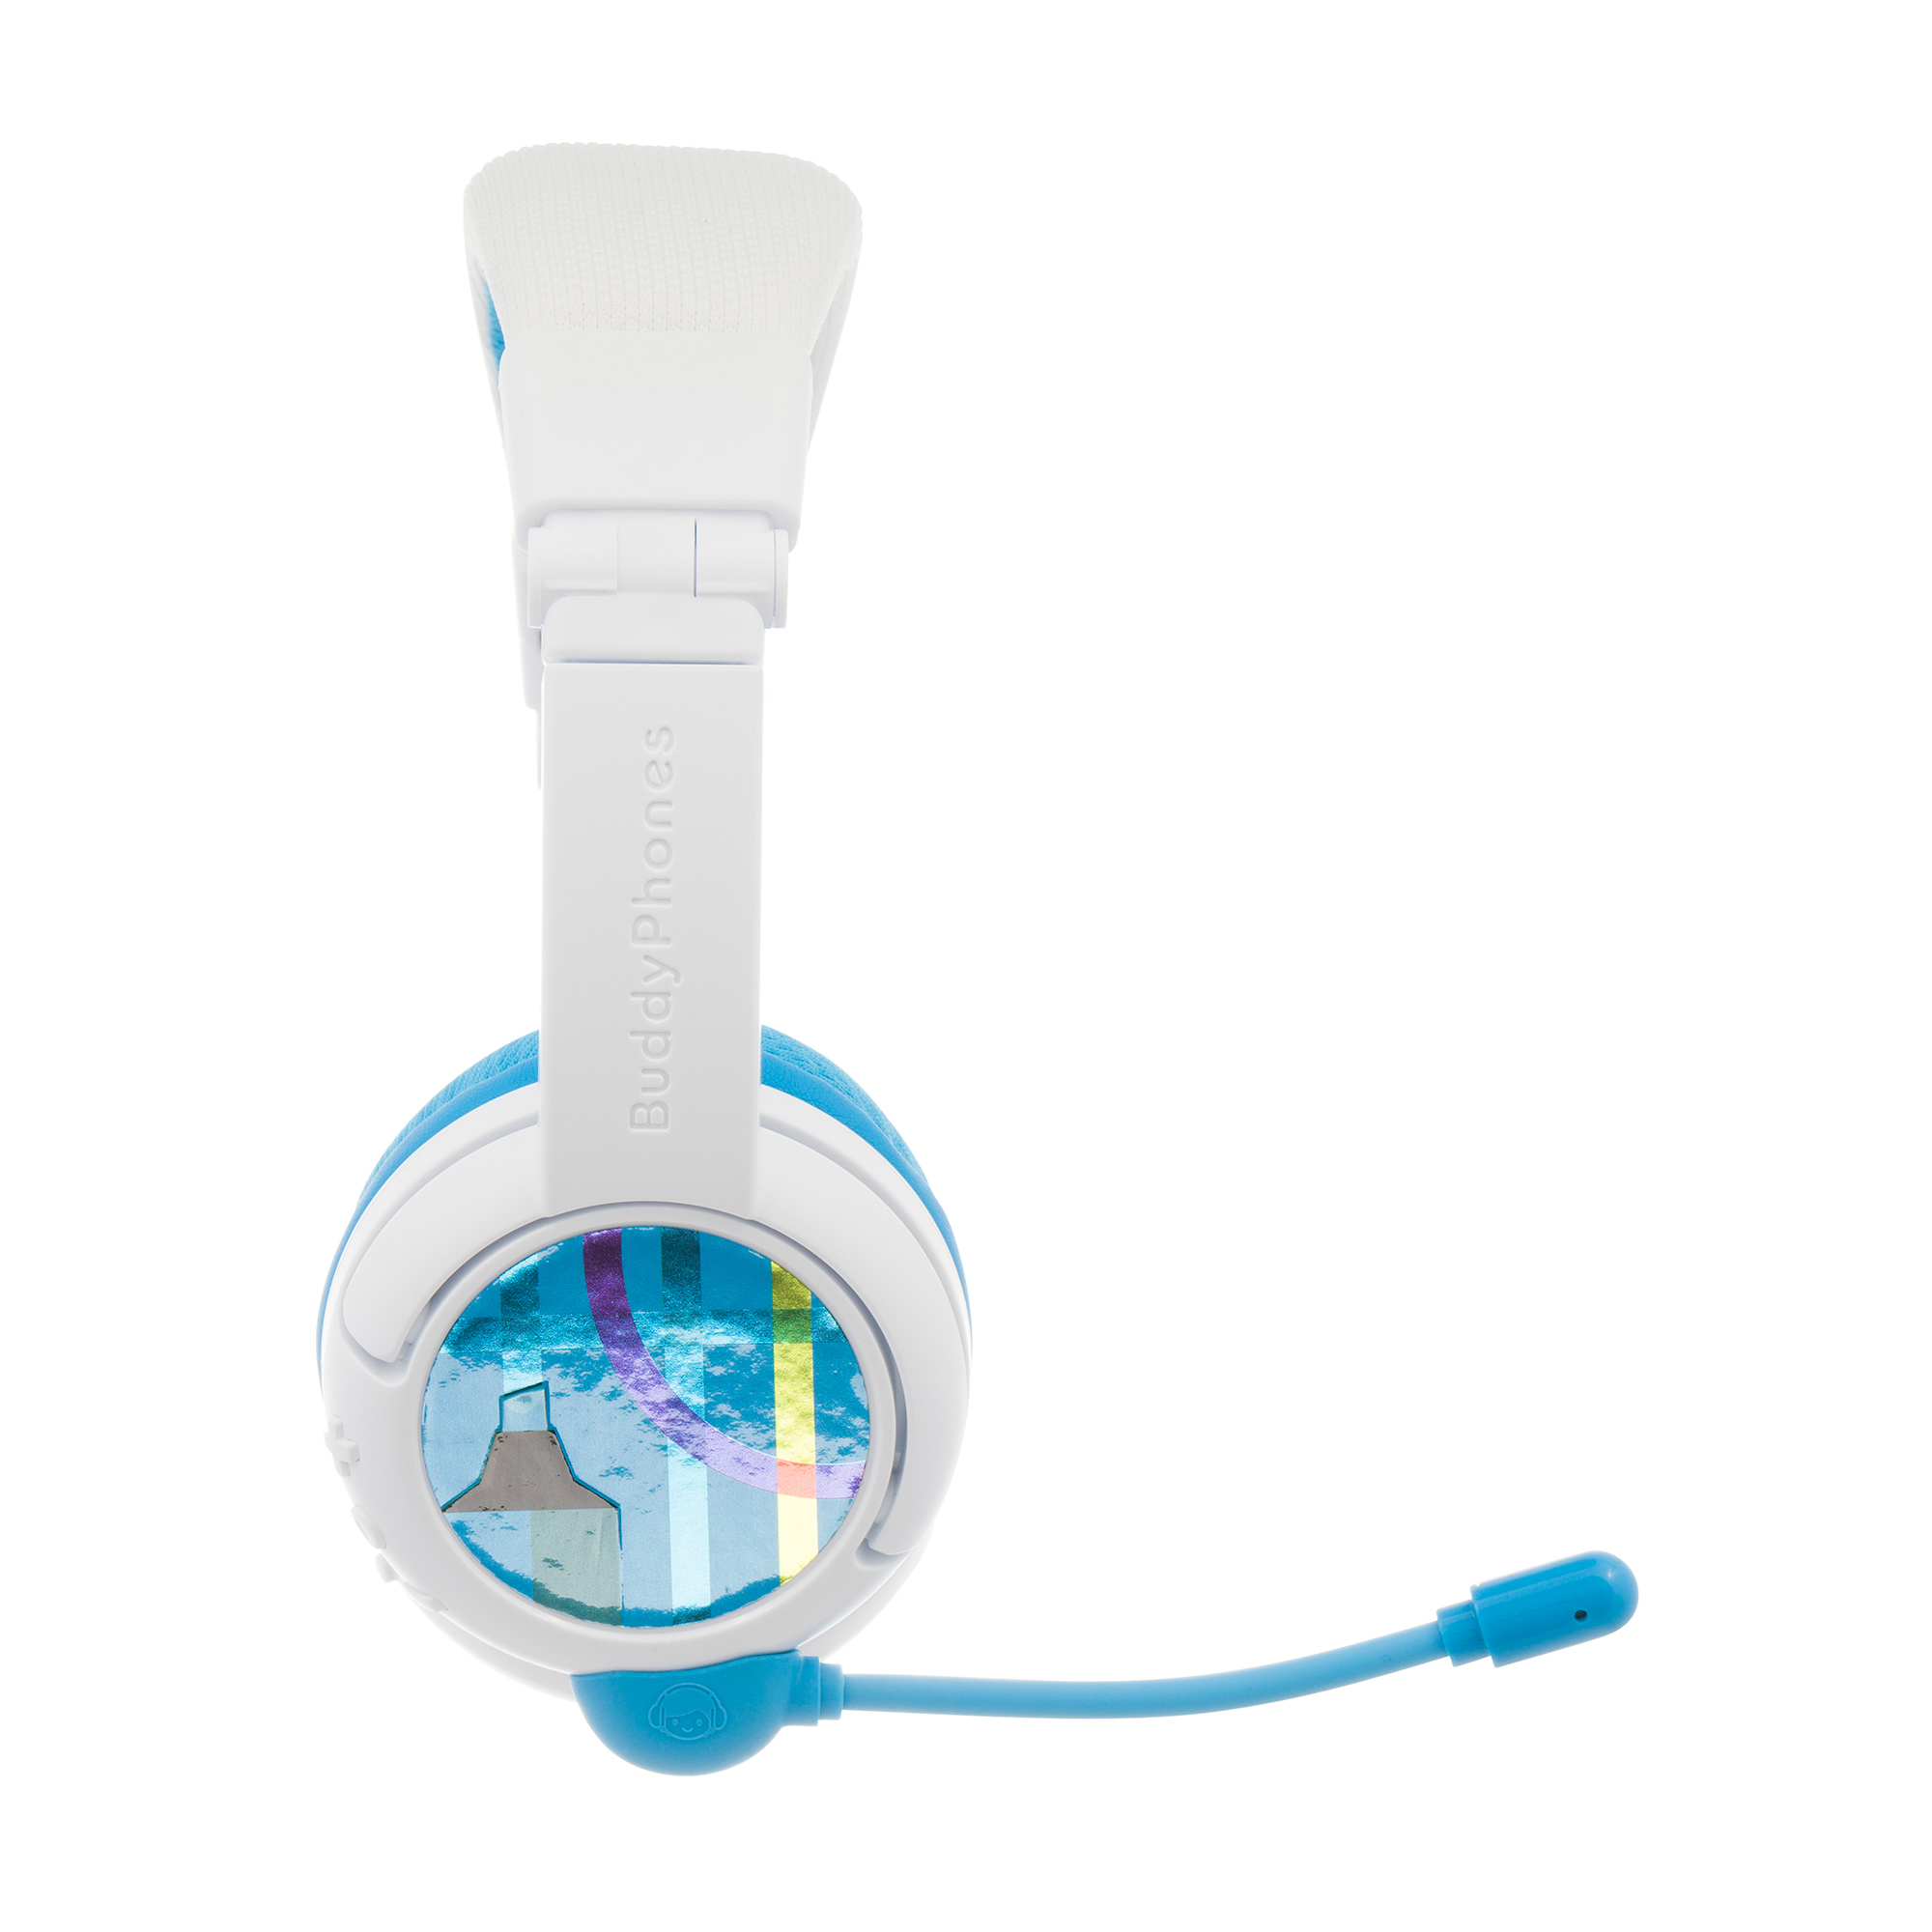 Bluetooth On-ear Wireless, Blau School+ Kinder BUDDYPHONES Kopfhörer